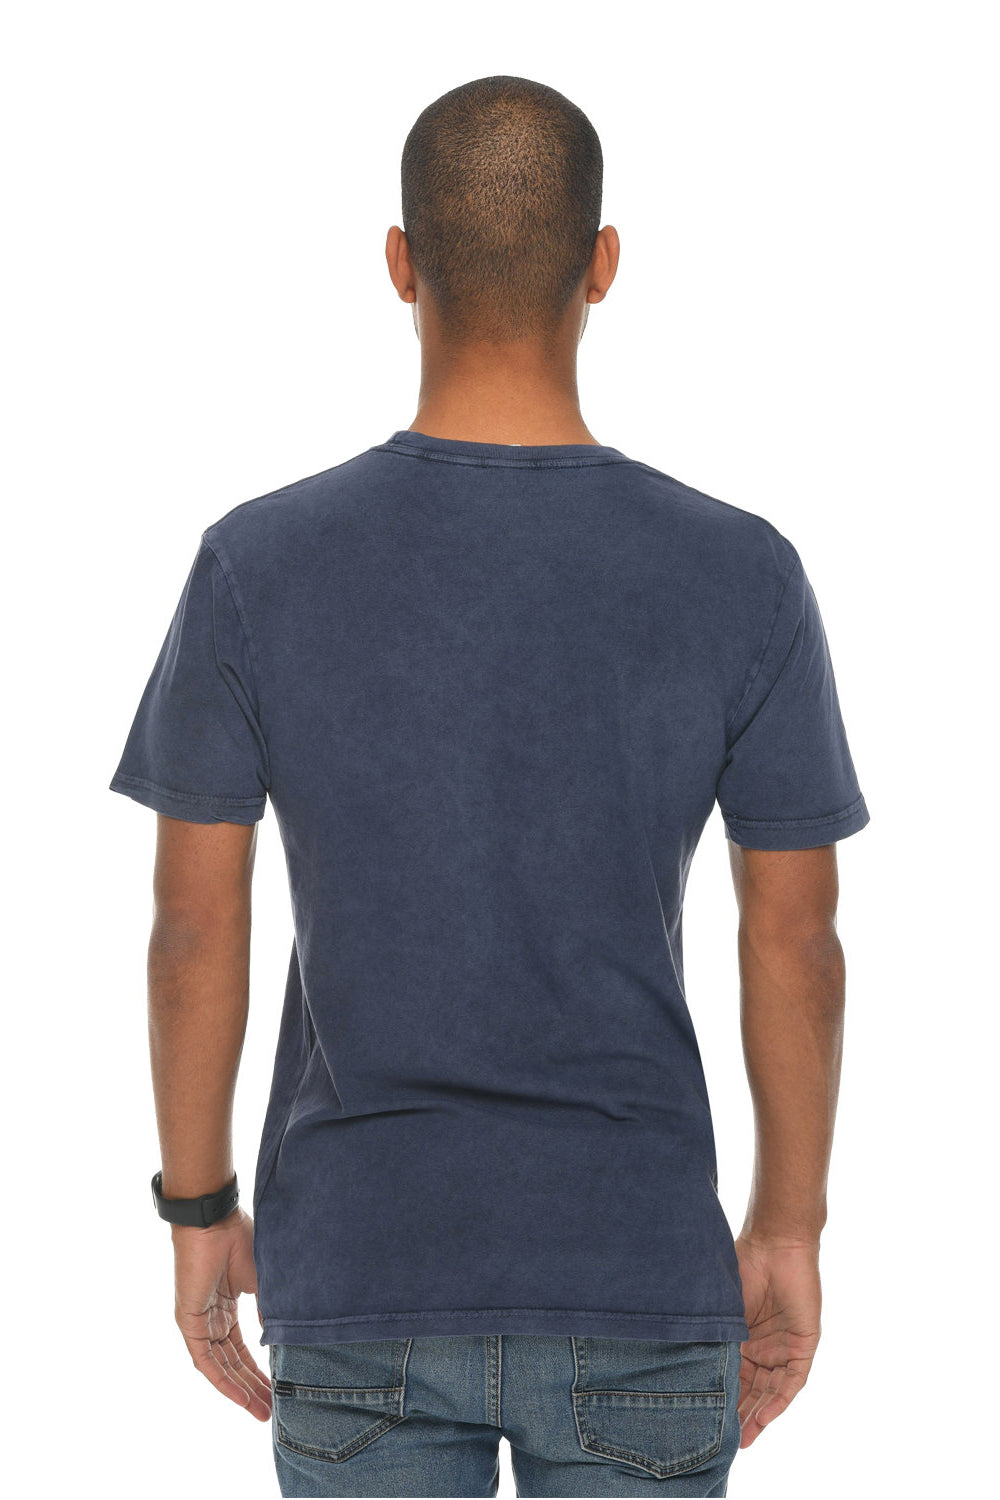 Lane Seven LST002 Mens Vintage Short Sleeve Crewneck T-Shirt Vintage Denim Blue Back